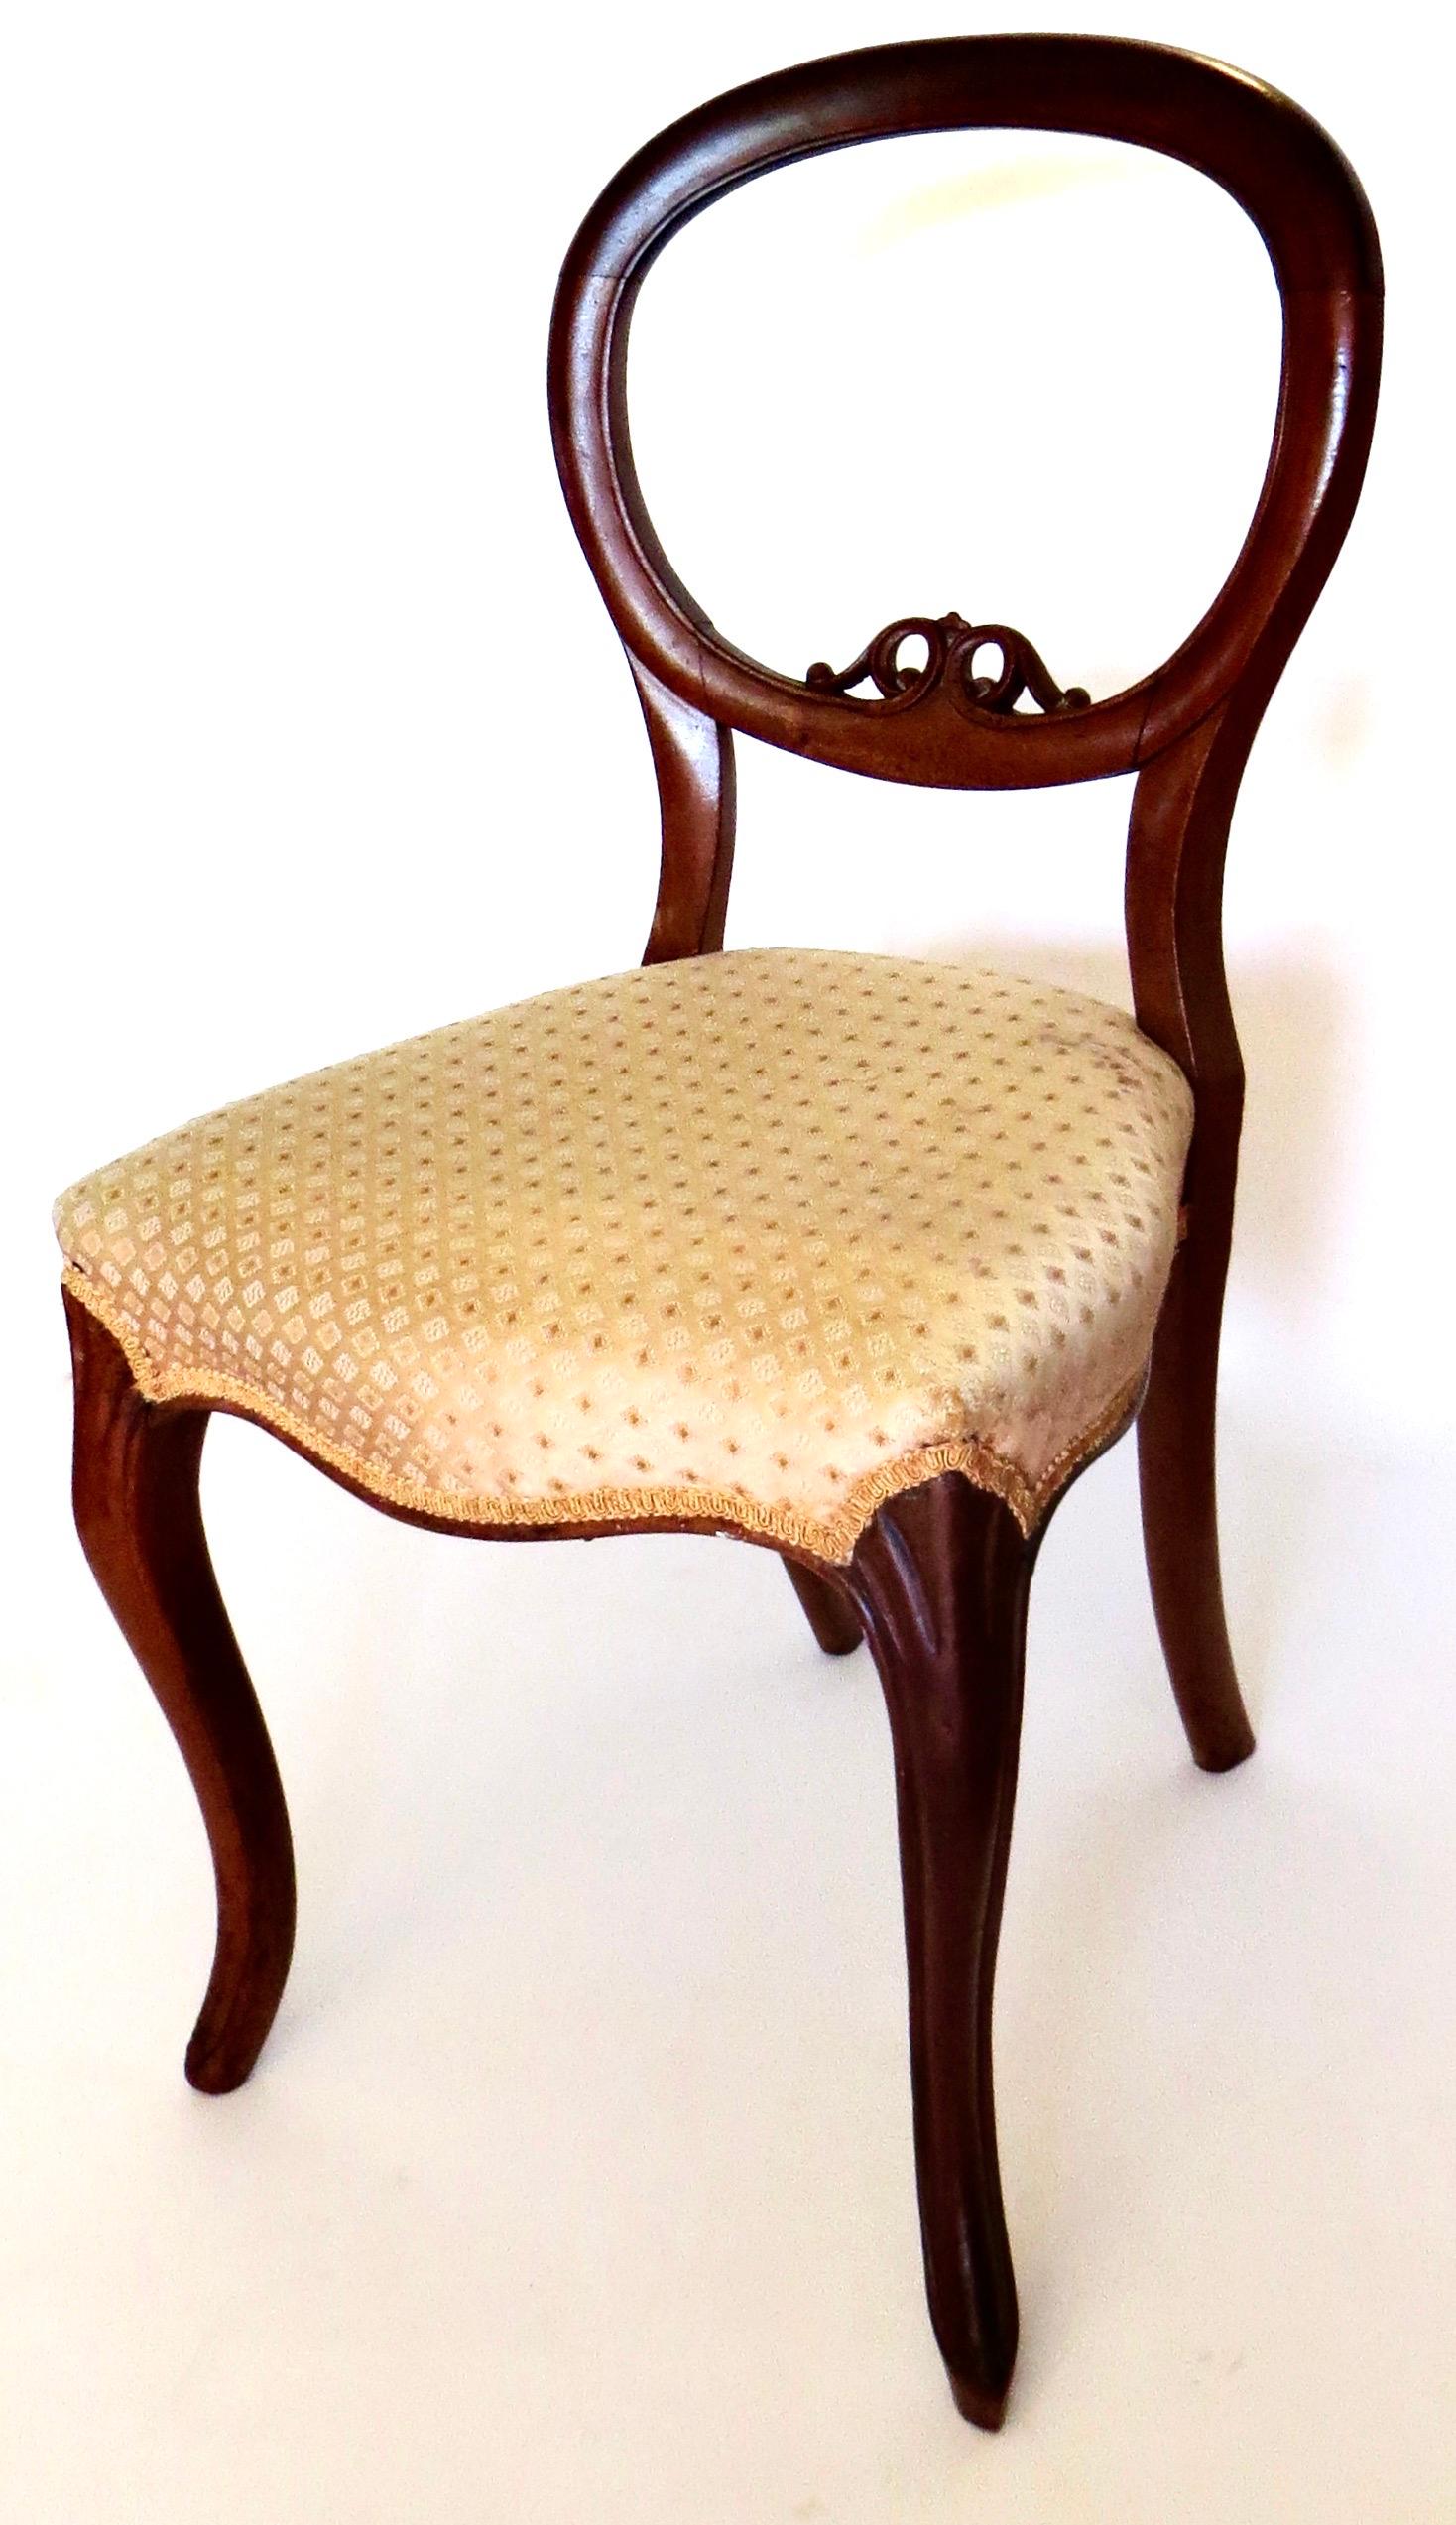 Typischer englischer Balloon Back Chair für den Salon, den Schreibtisch einer Dame oder im Boudoire am Frisiertisch im mittelviktorianischen England. Er hat eine runde oder ballonförmige Rückenlehne, kabriole Vorderbeine mit gespreizten Hinterbeinen